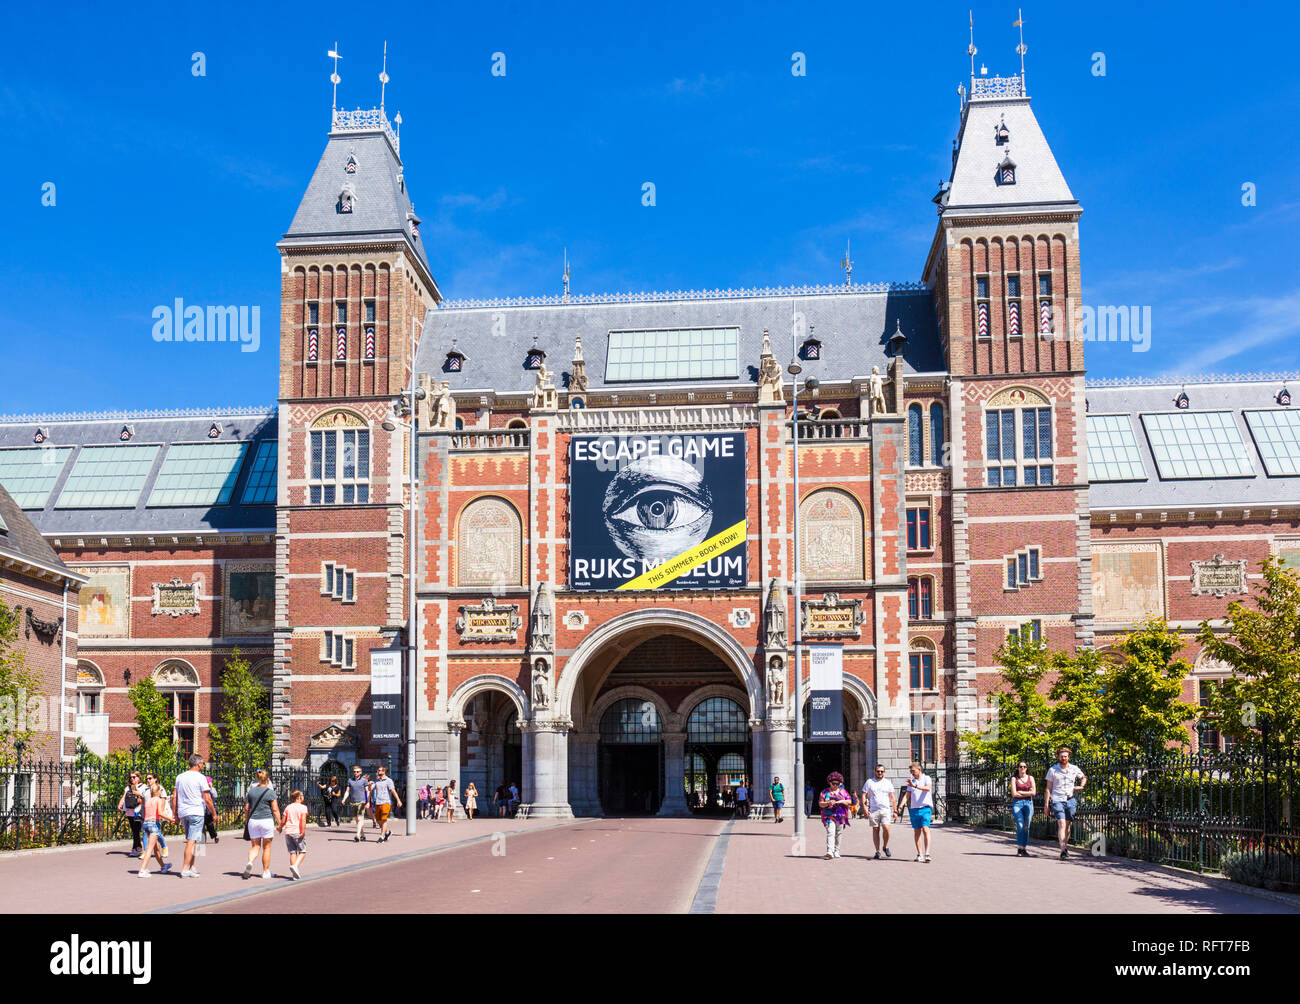 Passage d'entrée au Rijksmuseum, musée et galerie d'art néerlandais, Amsterdam, Hollande du Nord, Pays-Bas, Europe Banque D'Images